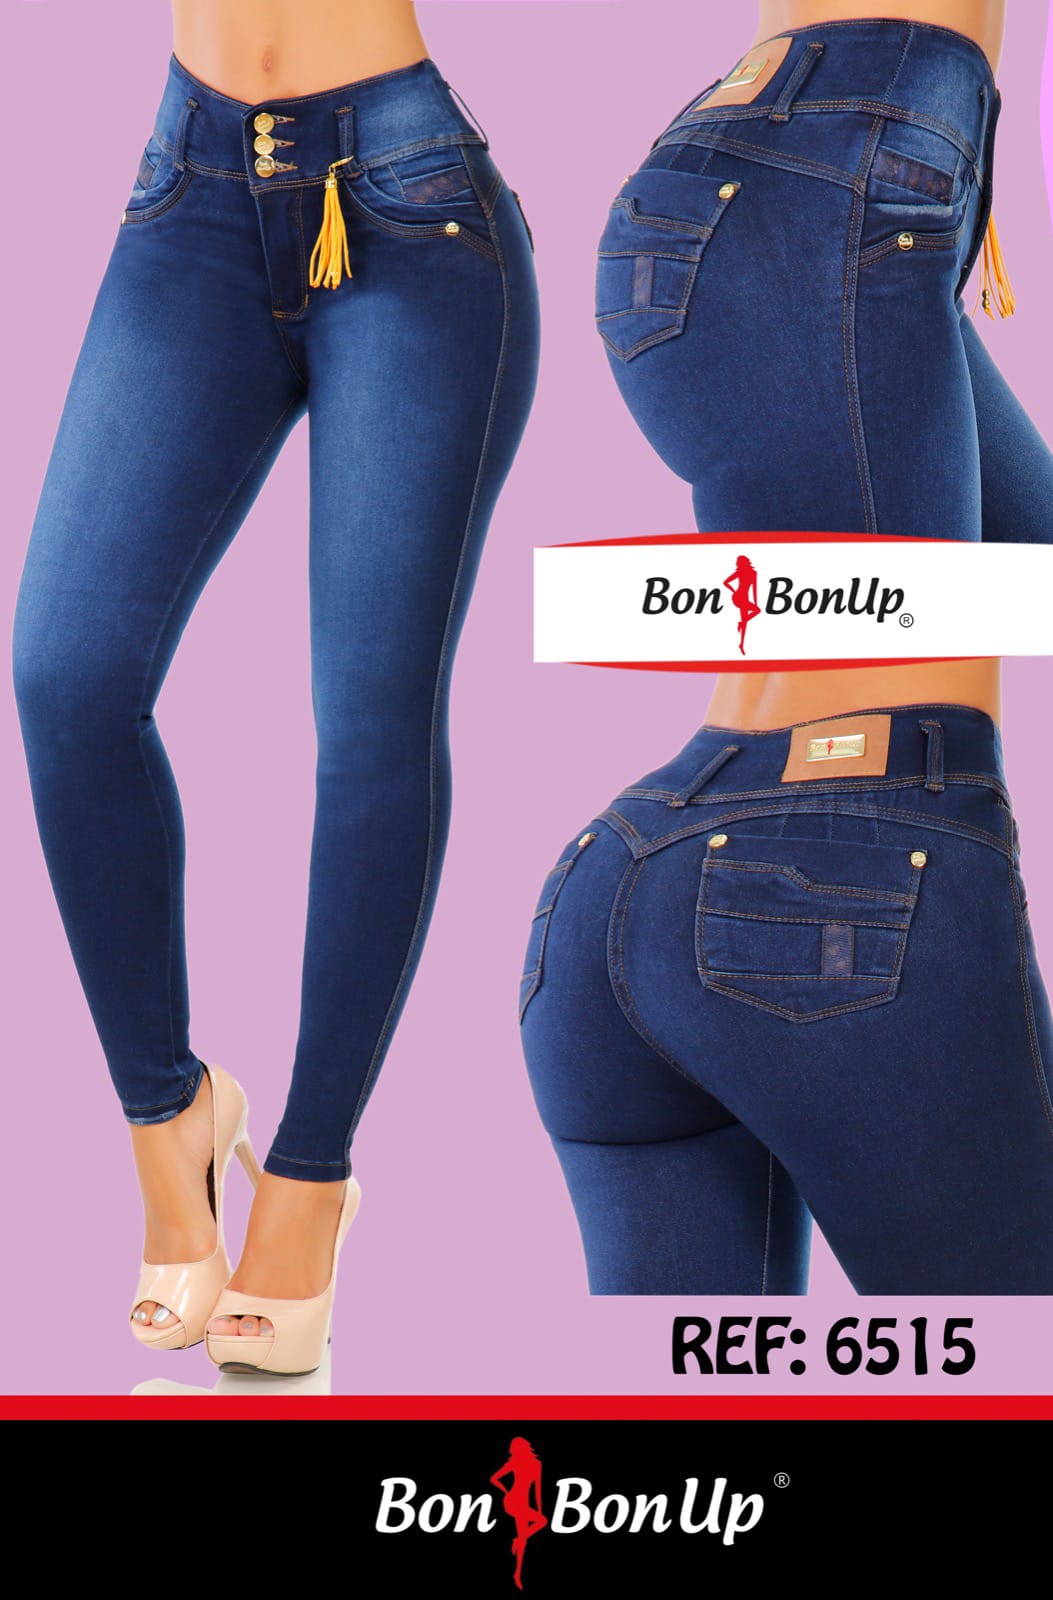 6515 BonBonUp Jeans